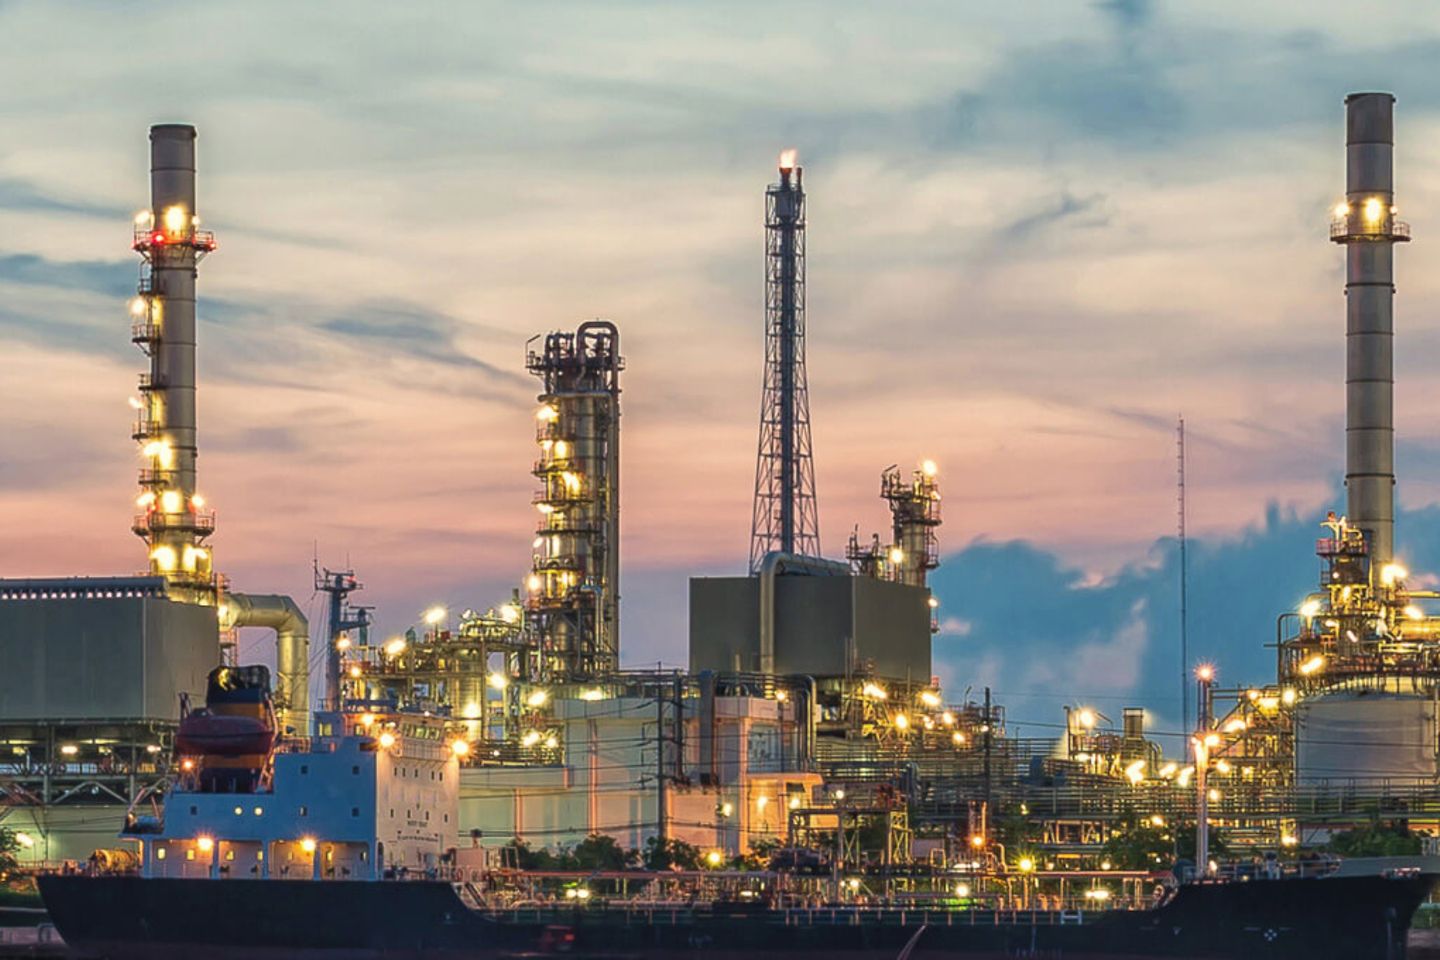 Olieraffinaderij en petrochemische installatie bij zonsopgang